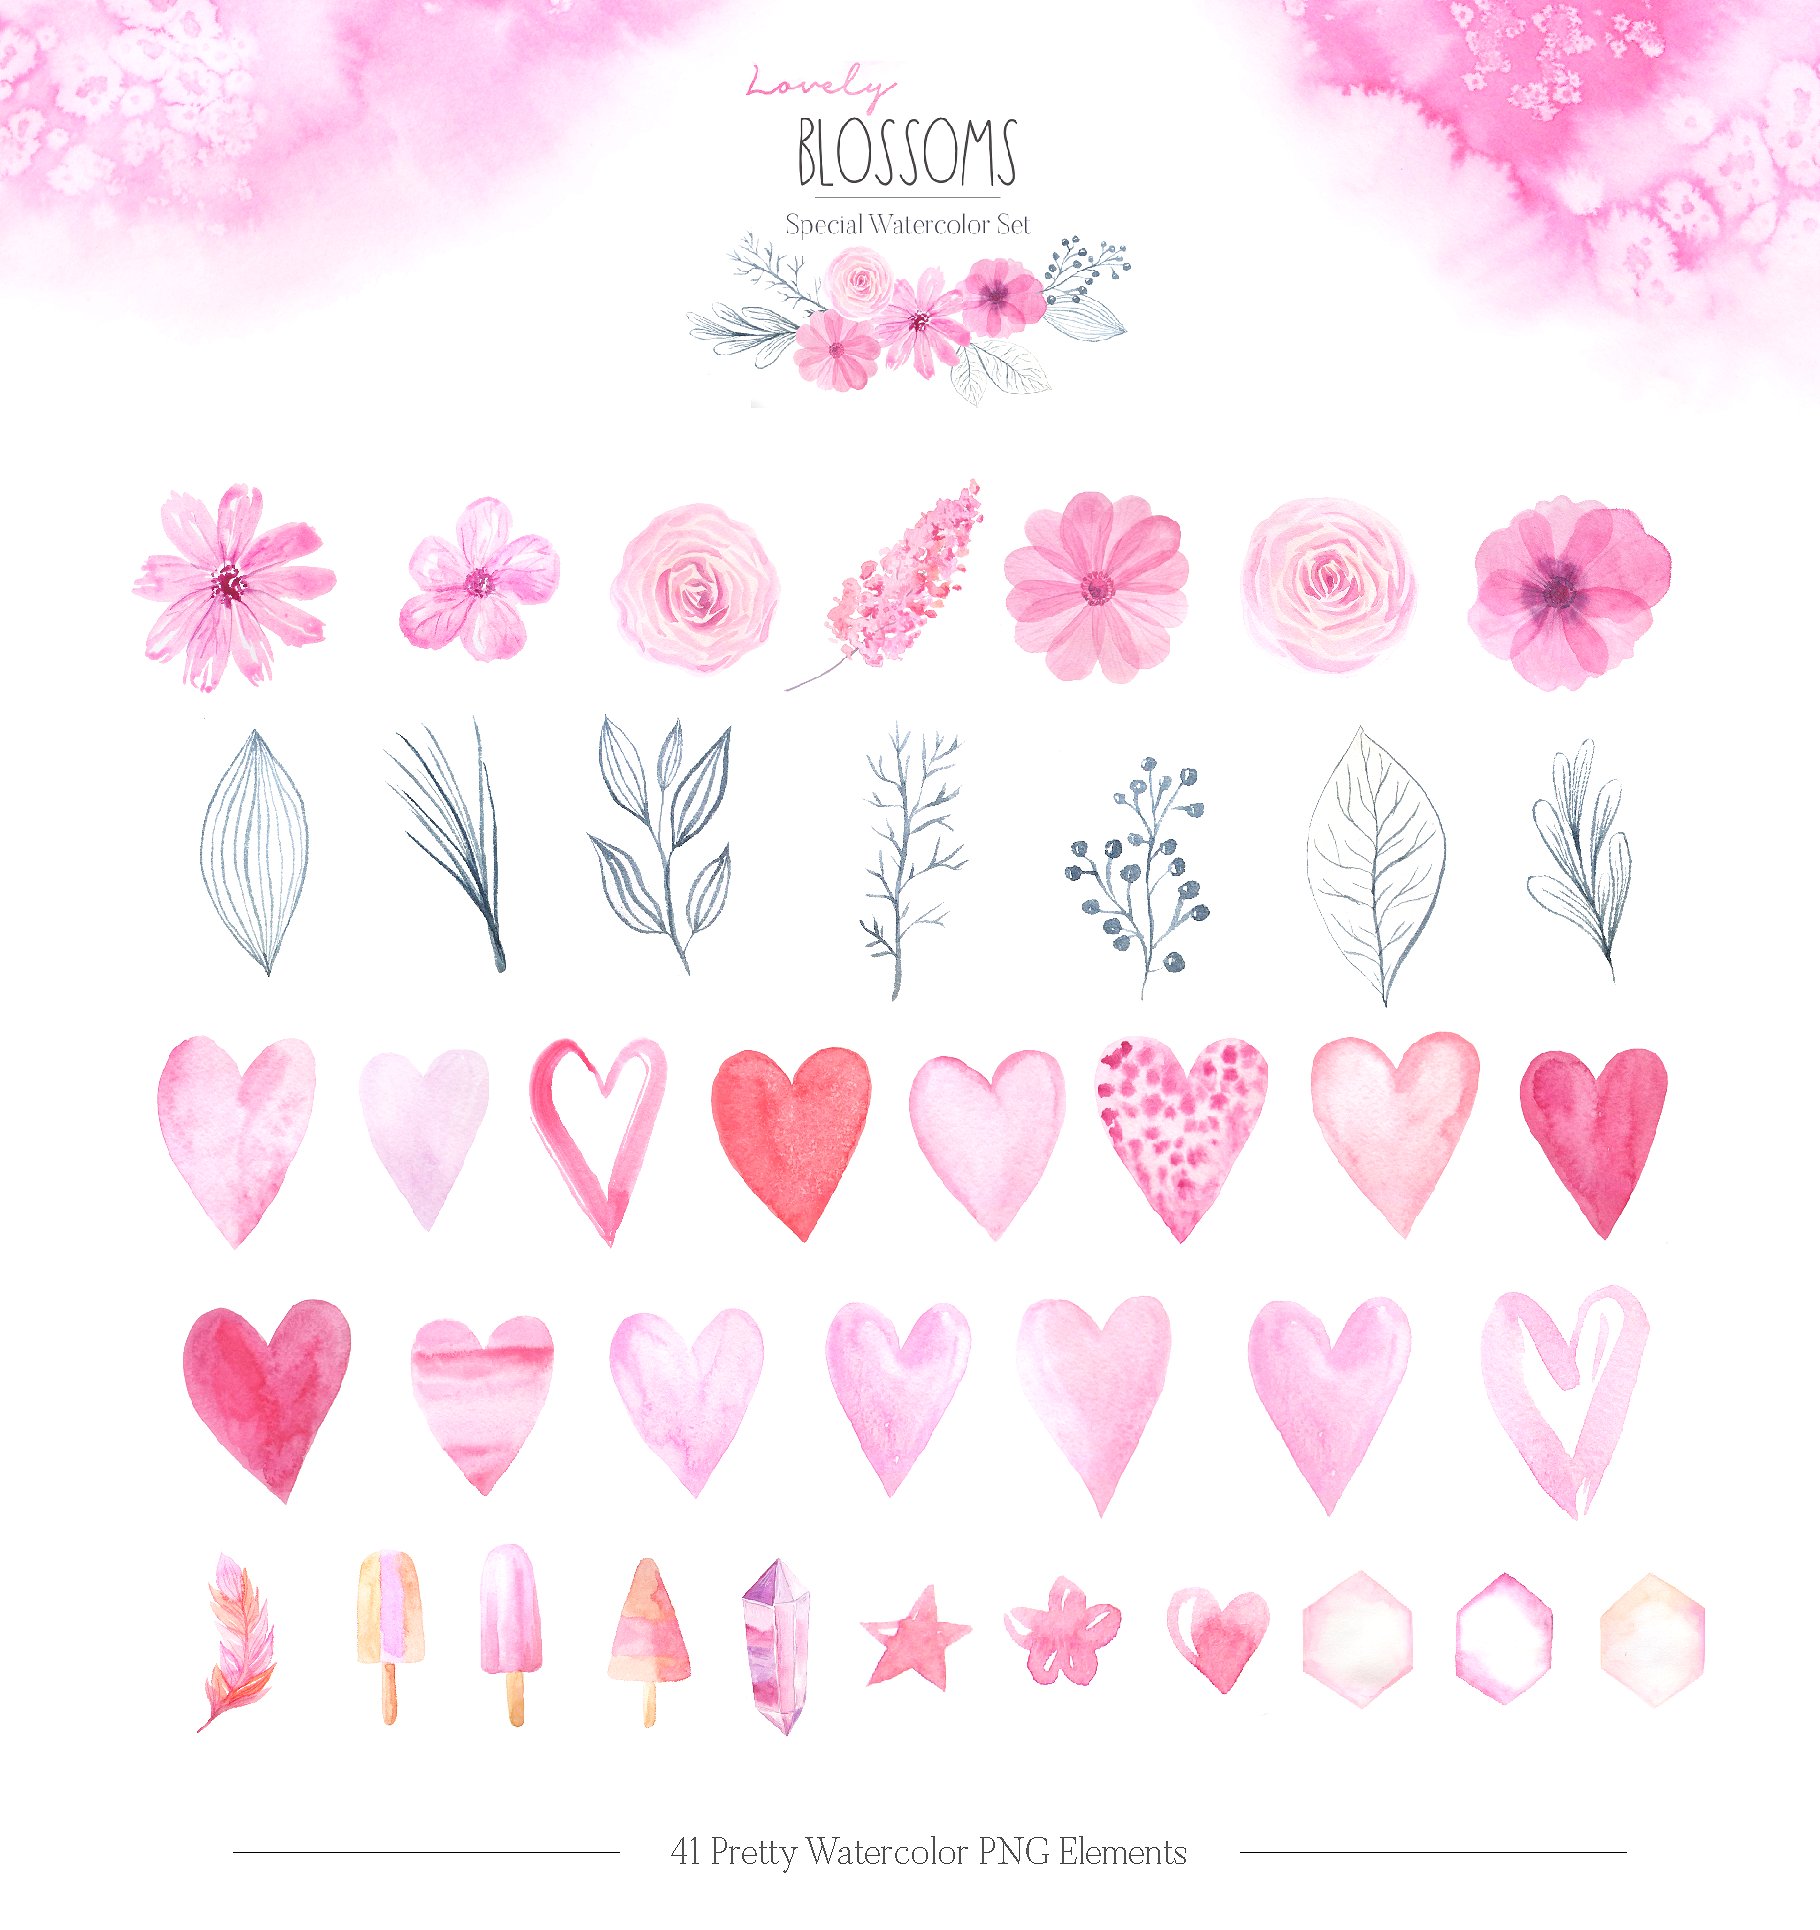 情人节可爱花朵水彩画素材套装下载[JPG,PNG]插图1